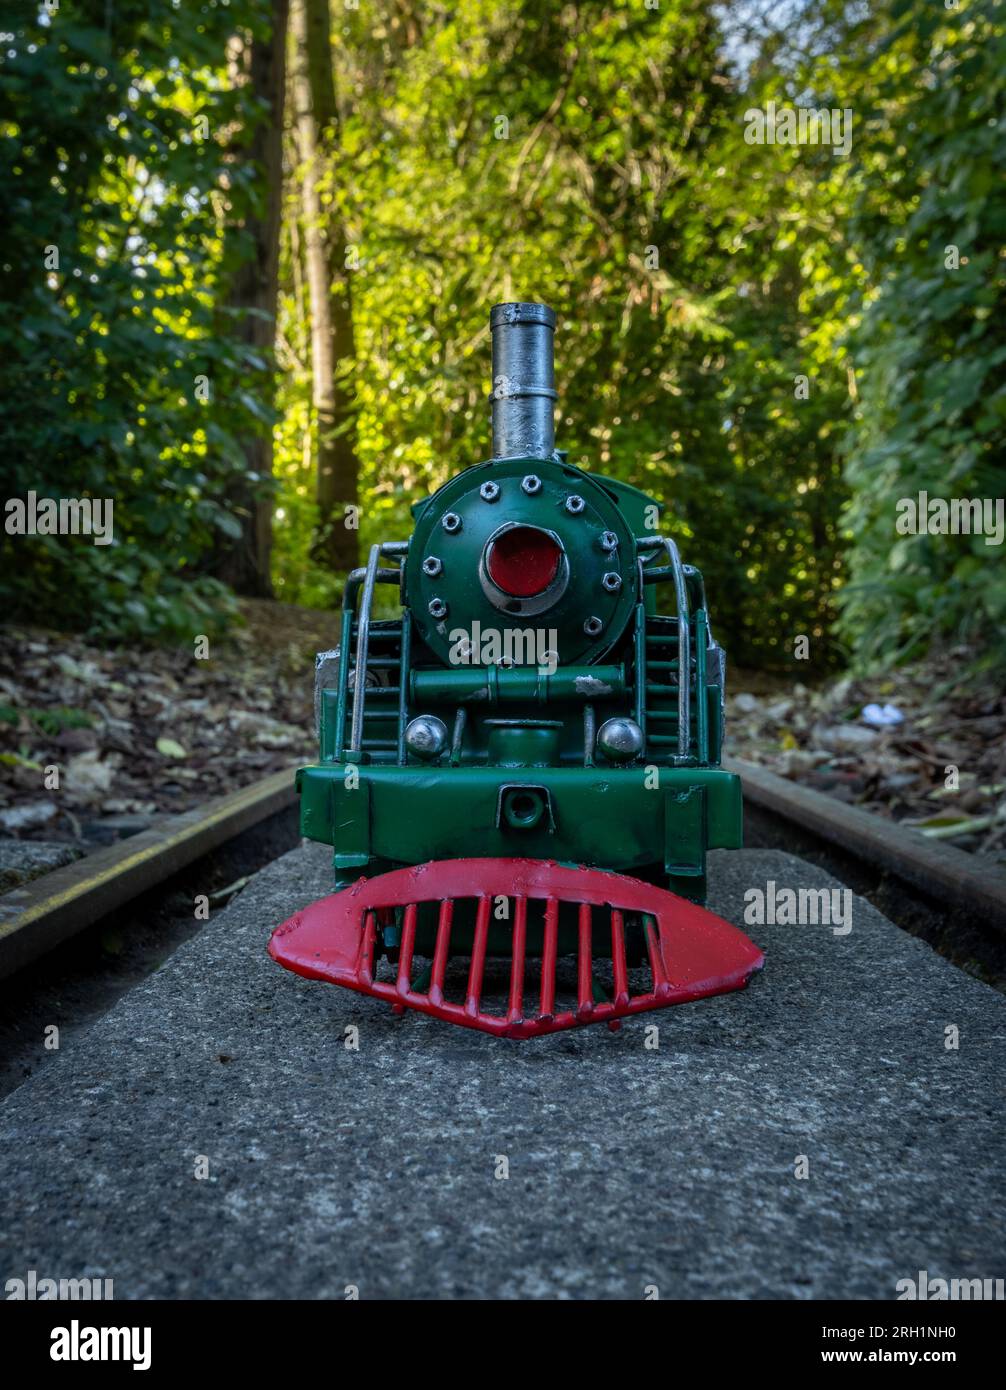 Modello di locomotiva a vapore verde con ruote rosse con sfondo boccola. Foto Stock